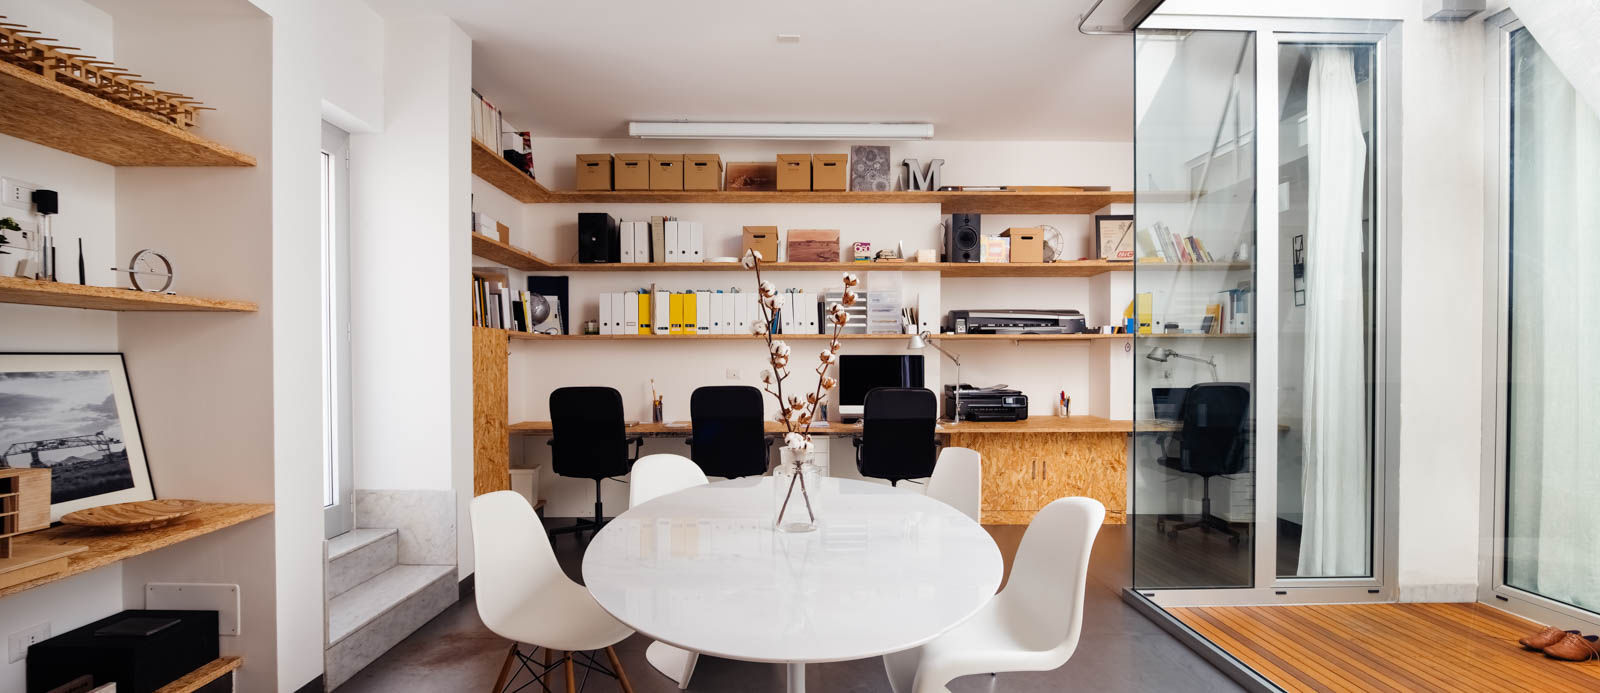 sala da pranzo / riunioni manuarino architettura design comunicazione Studio minimalista OSB tulip,tavolo da pranzo,mensole su misura,panton